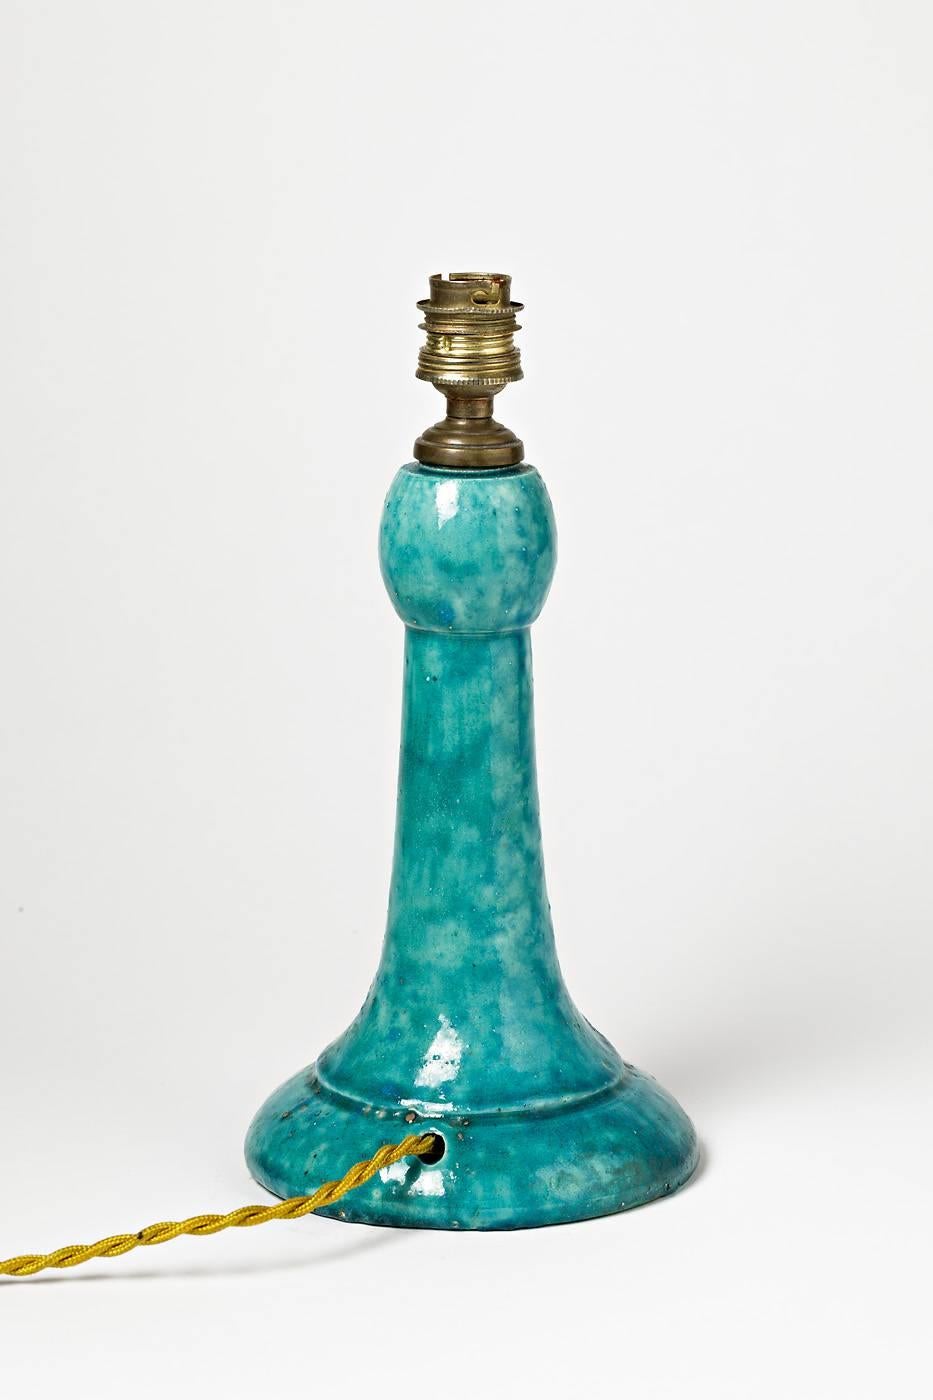 Edmond Lachenal

Wunderschöne Keramik-Tischlampe mit grüner und blauer Keramikglasur

unterzeichnet unter der Basis

ausgezeichnete Originalbedingungen

Abmessungen der Keramik: 21.5 x 13 x 13cm

Ursprüngliche Strombedingungen.